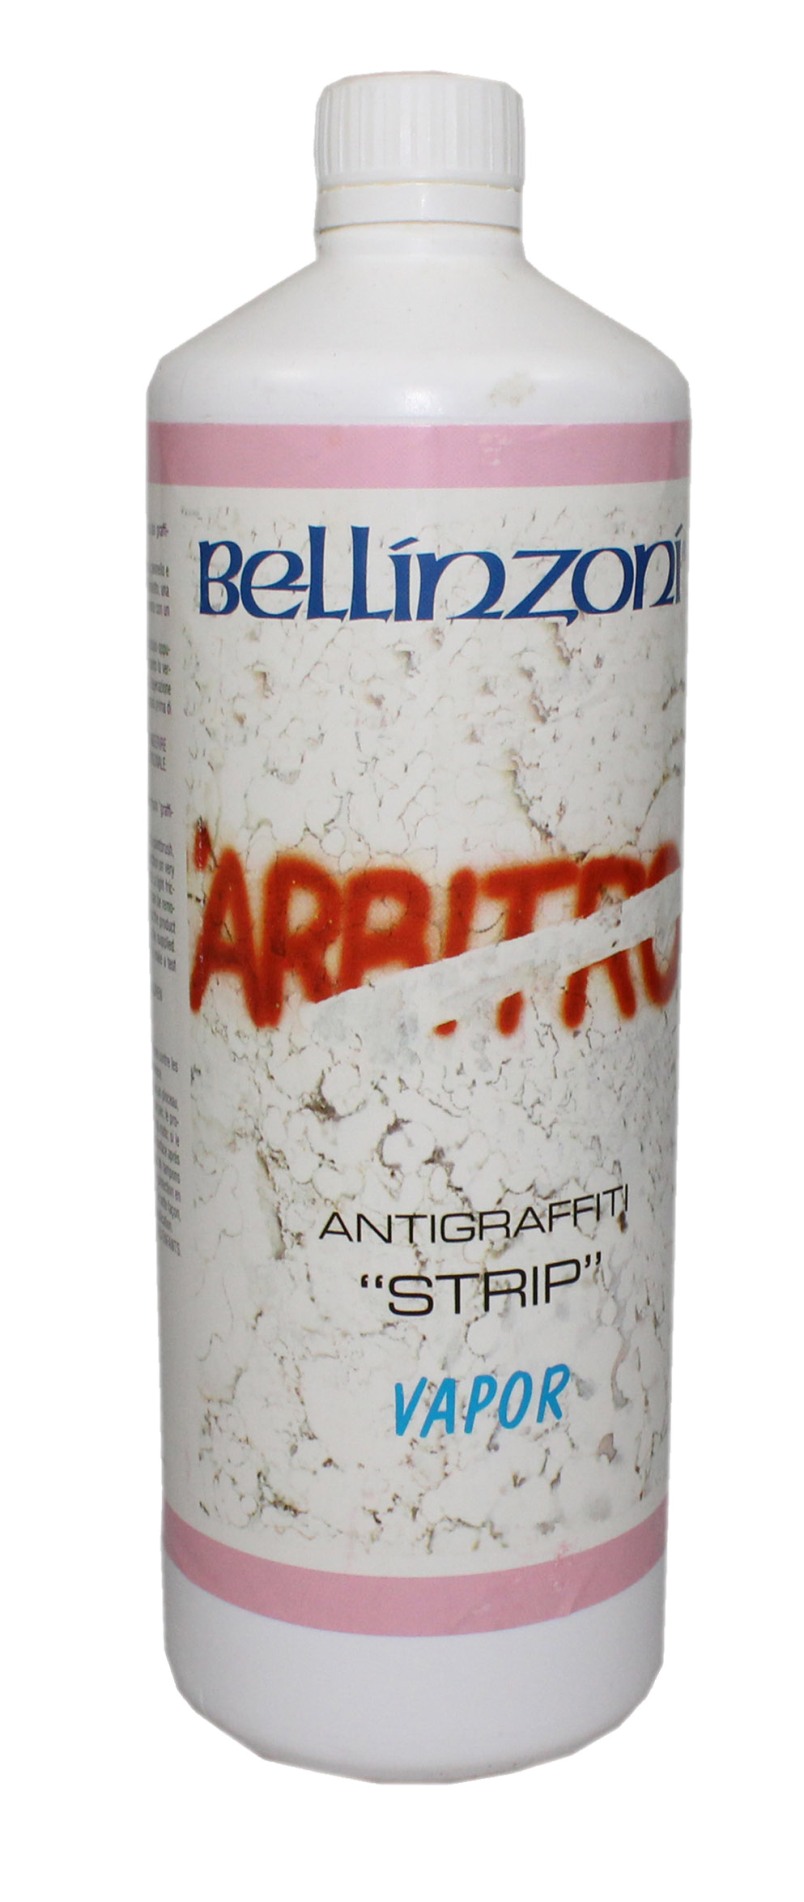 Bellinzoni - Antigraffiti Strip Vapor / 1 liter